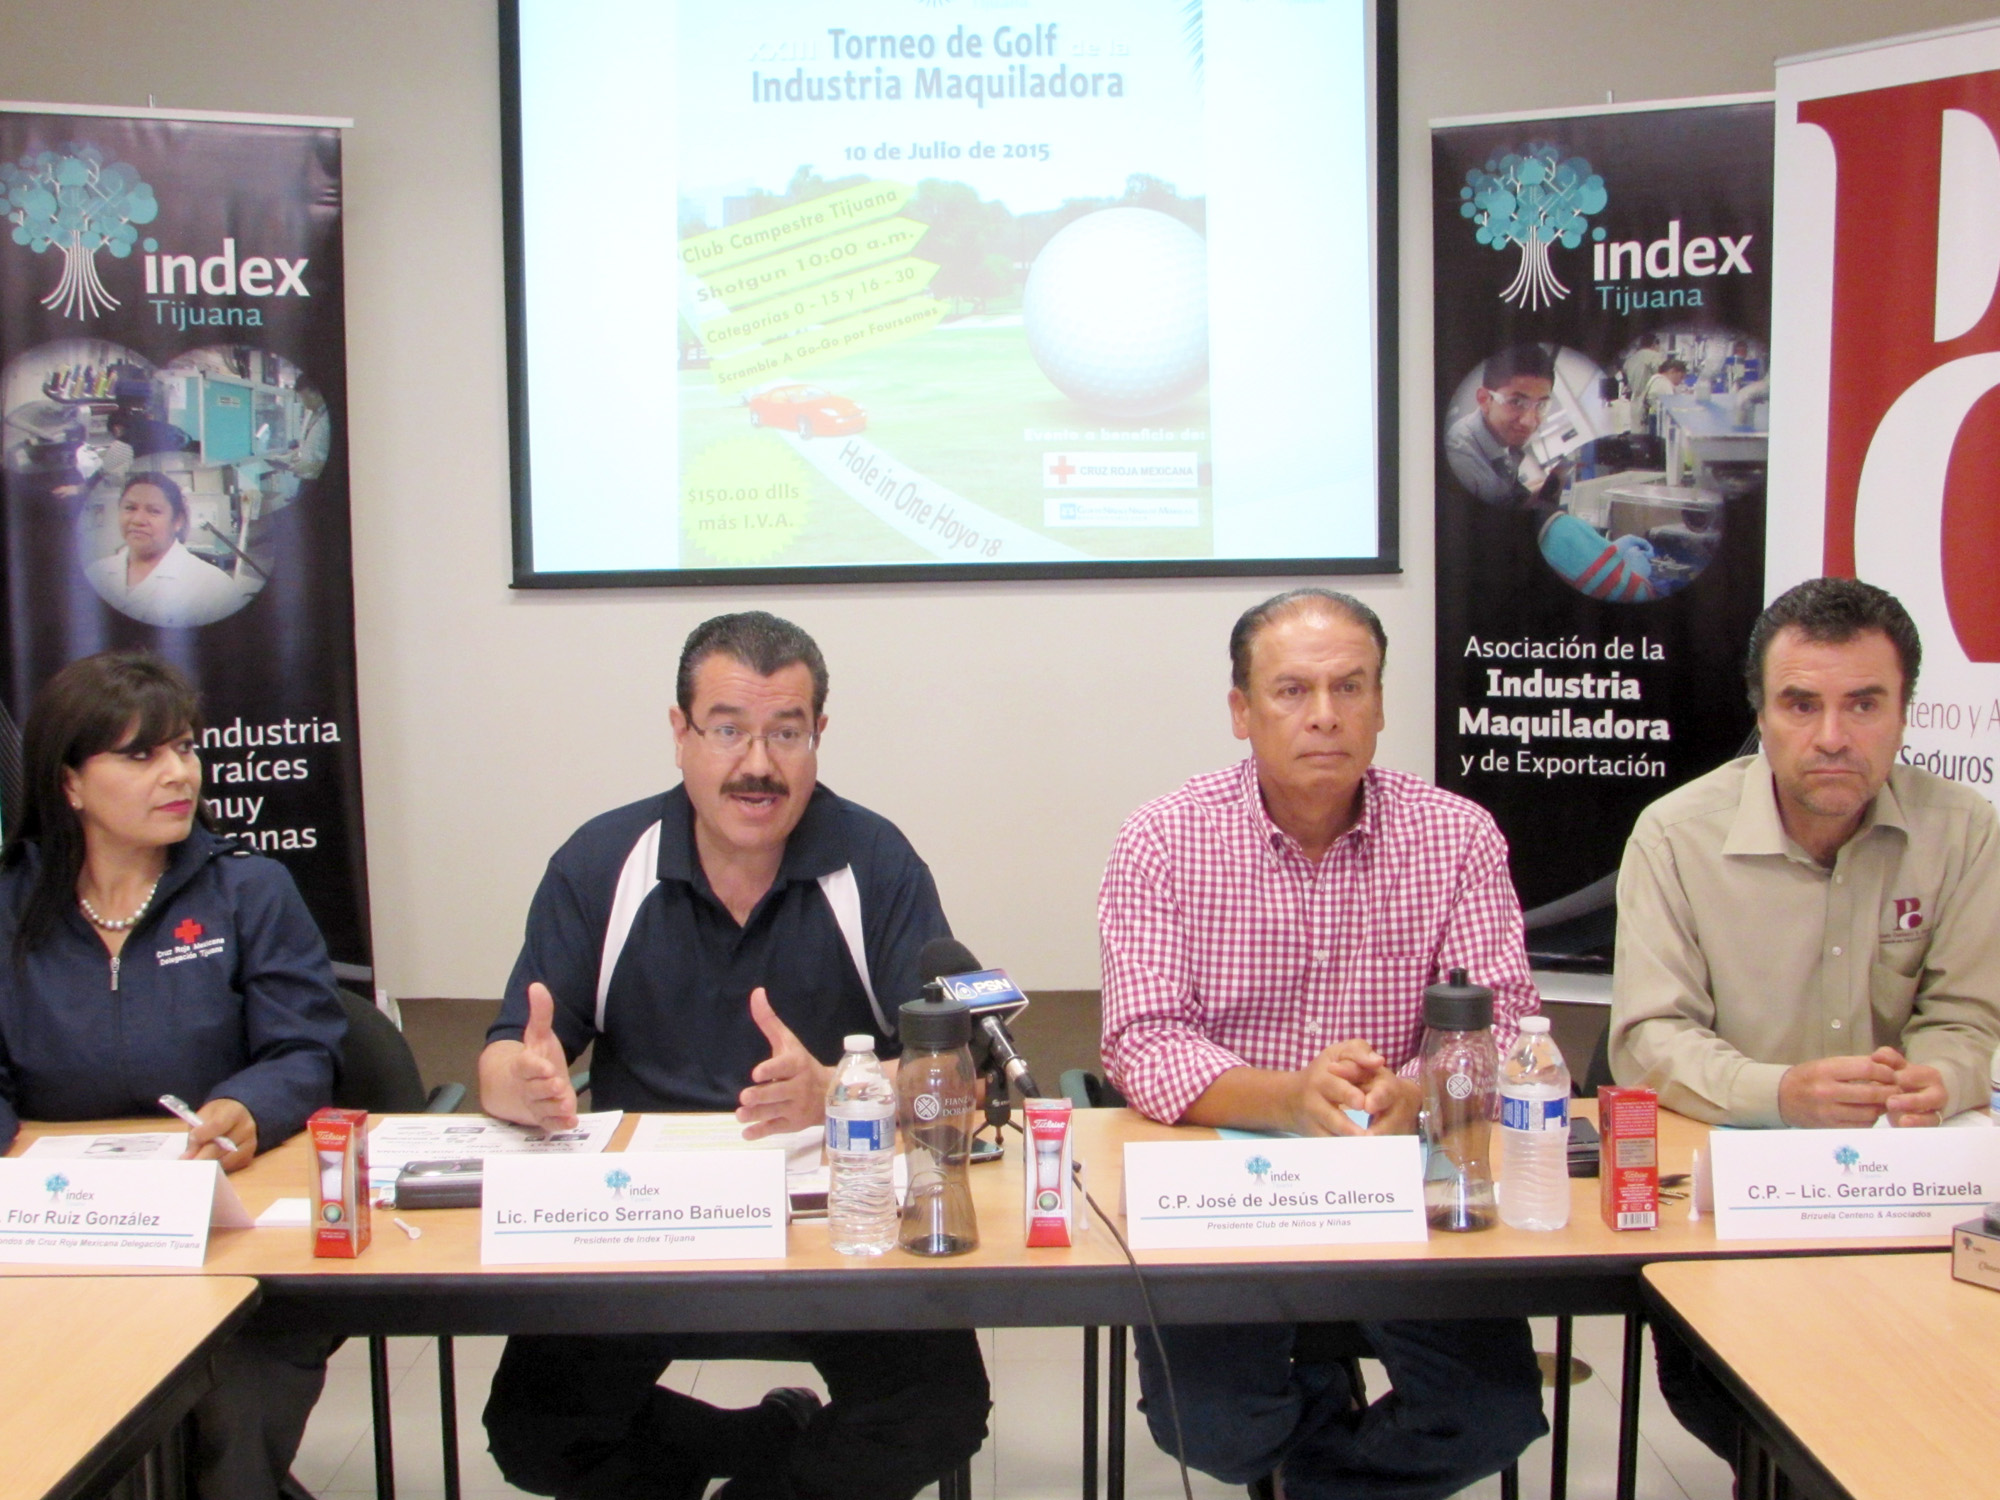 Anuncia Index-Tijuana “XXIII Torneo de Golf” a beneficio de instituciones sociales